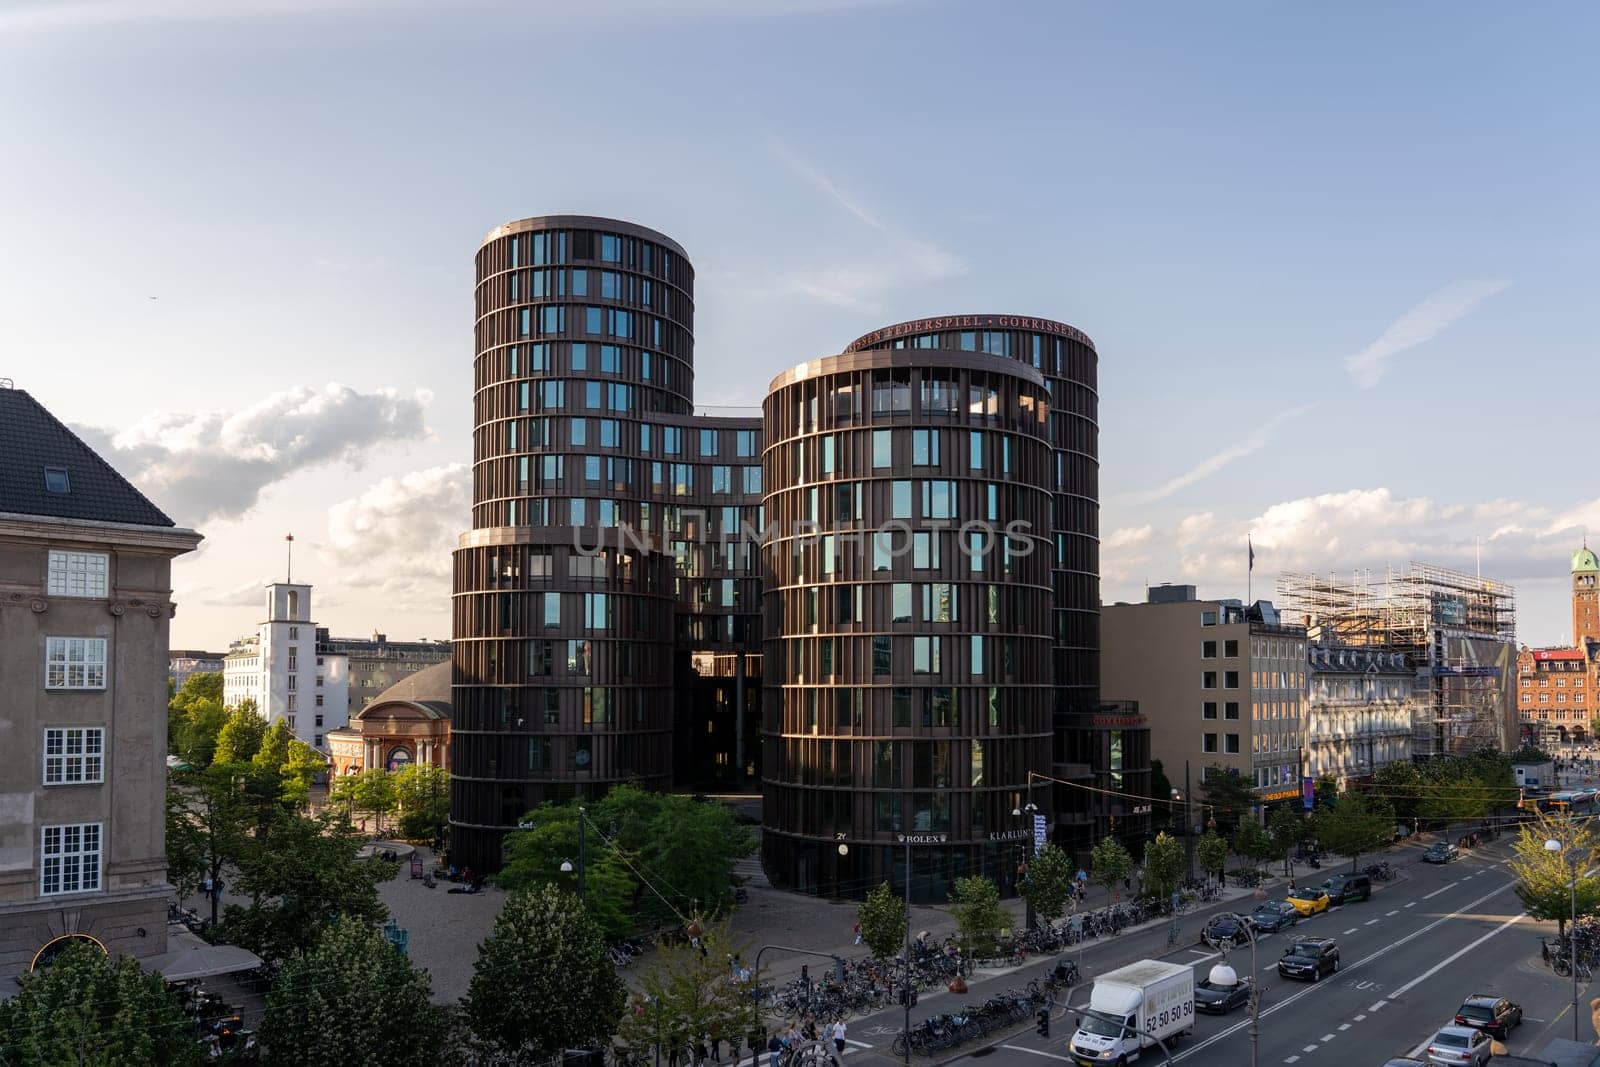 Axel Towers in Copenhagen, Denmark by oliverfoerstner